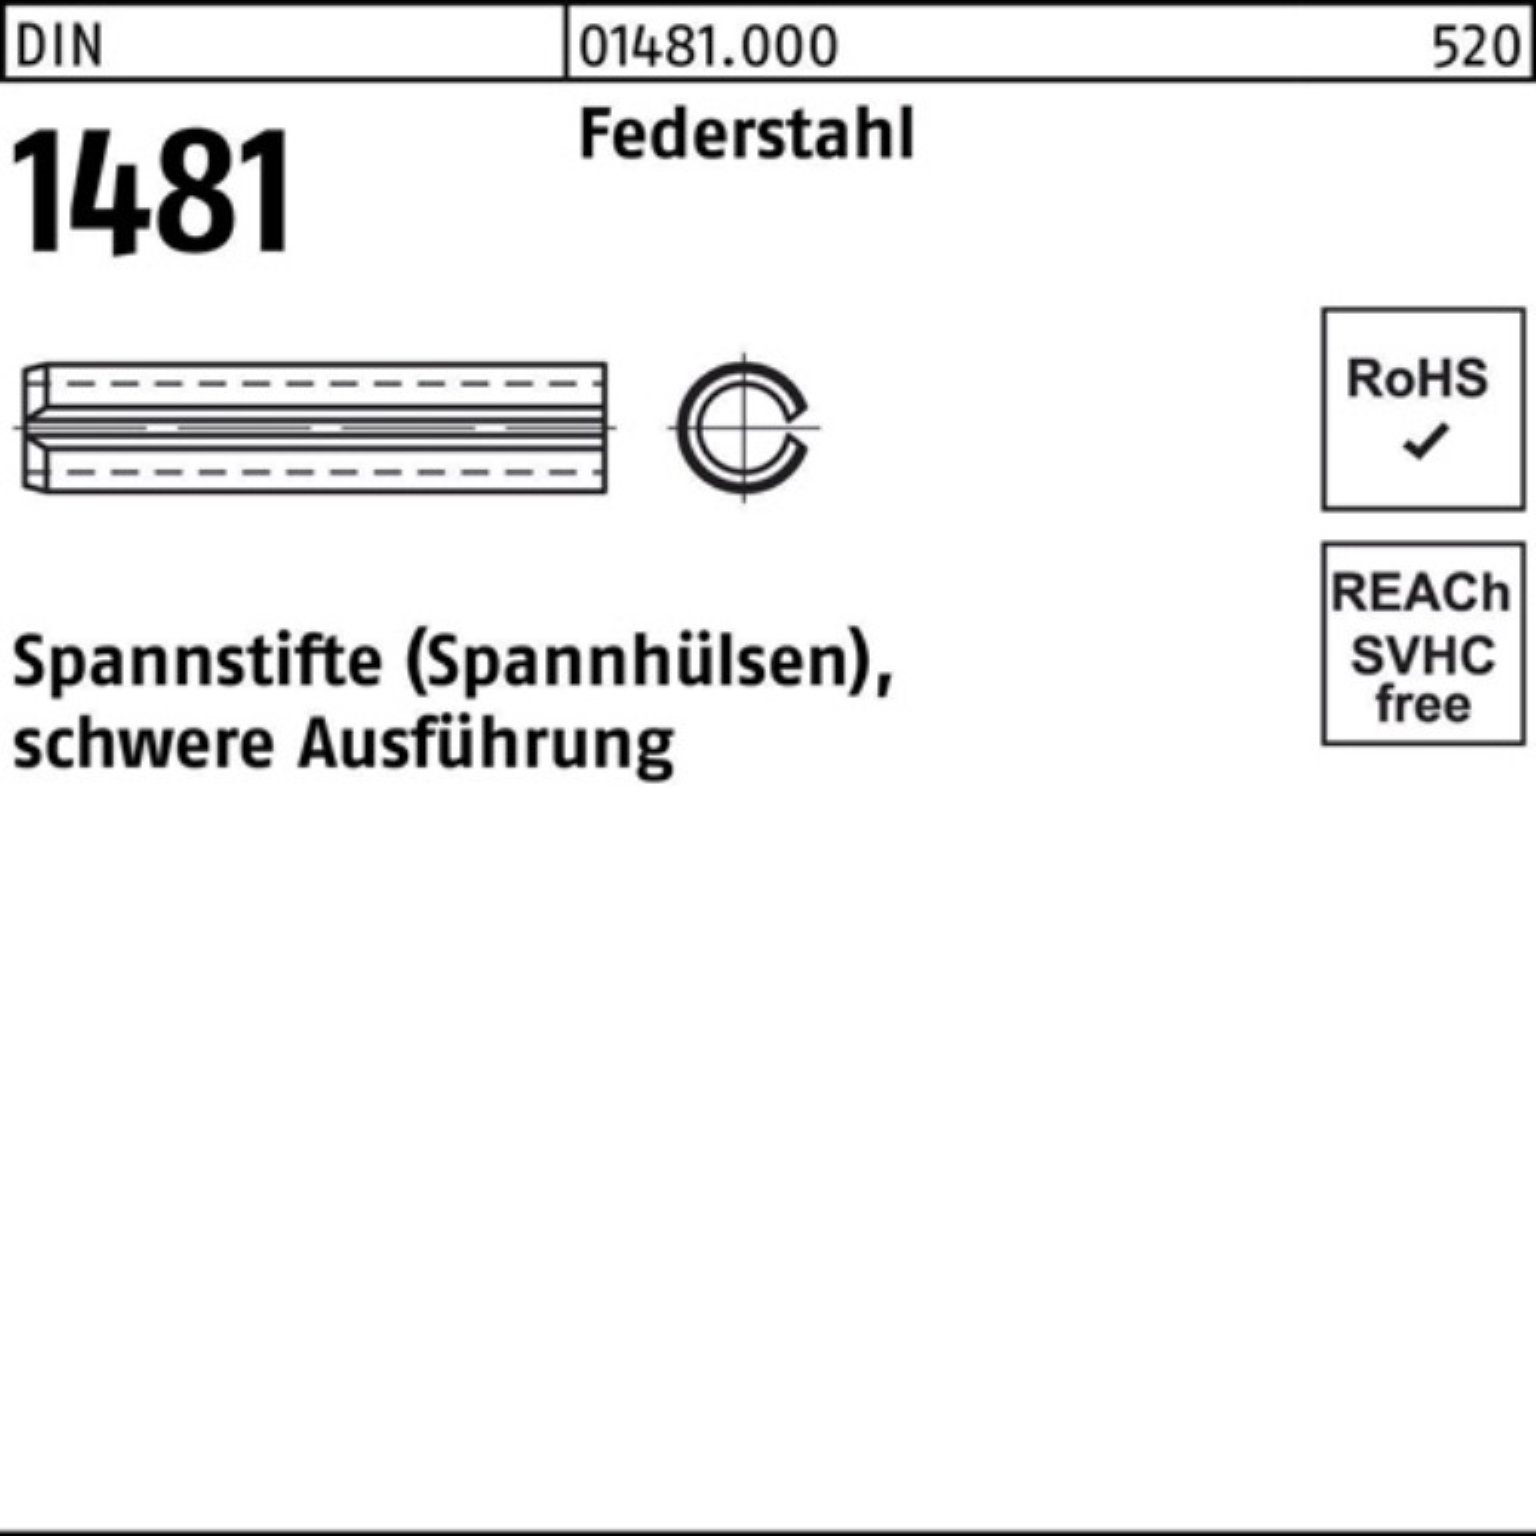 Reyher Spannstift 100er Pack Spannstift DIN 1481 9x 90 Federstahl schwere Ausführung 50